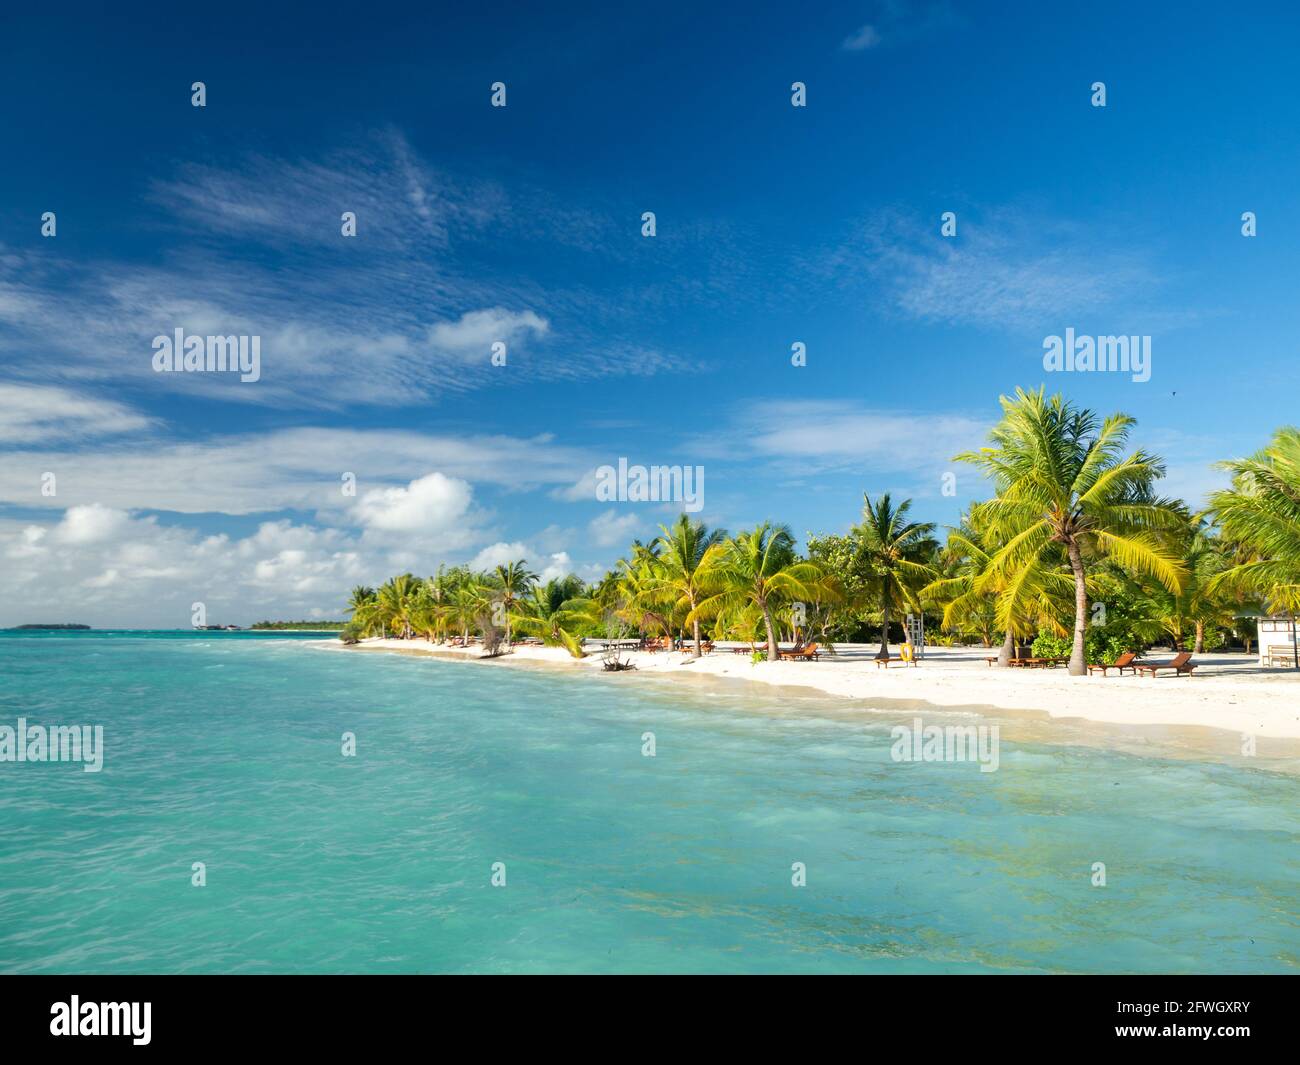 Maldives tropical îles scène panoramique, plage idyllique palmiers végétation et eau claire océan Indien mer, station touristique vacances Banque D'Images